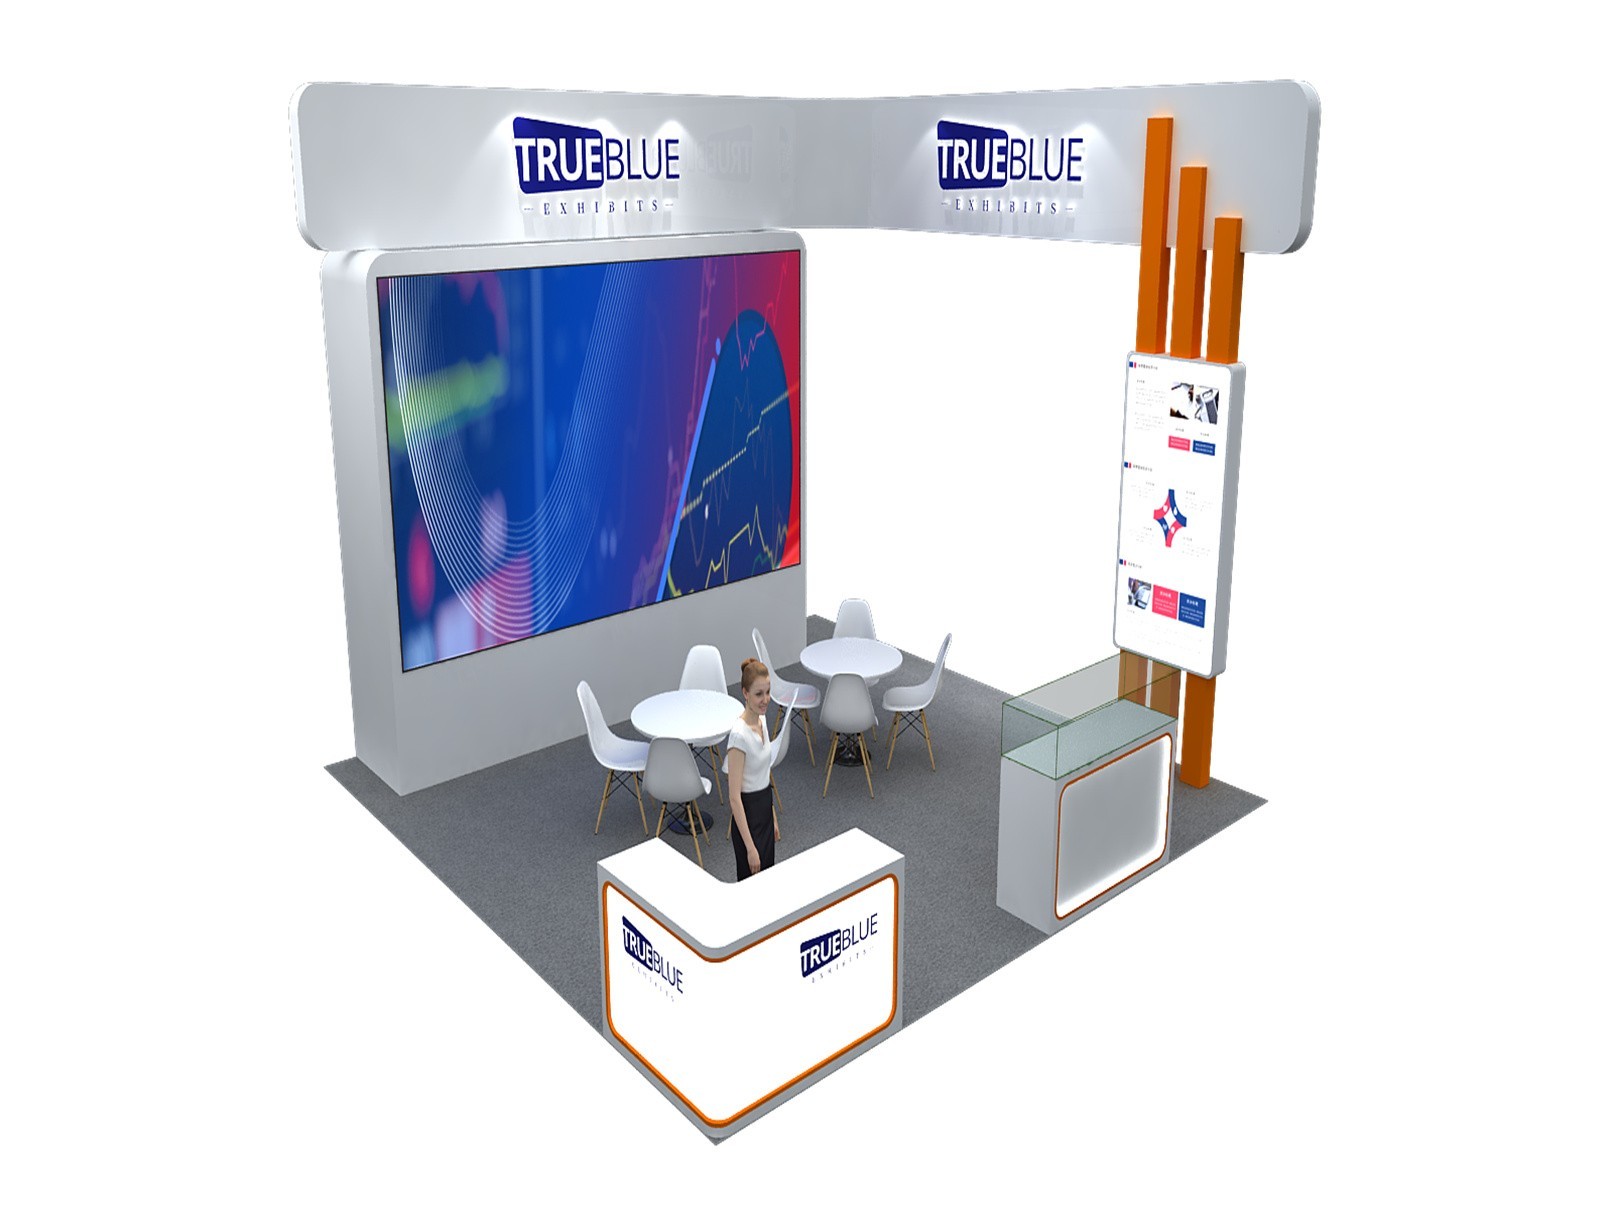 E6 20′ x 20′ Custom Trade Show Booth Design Concept